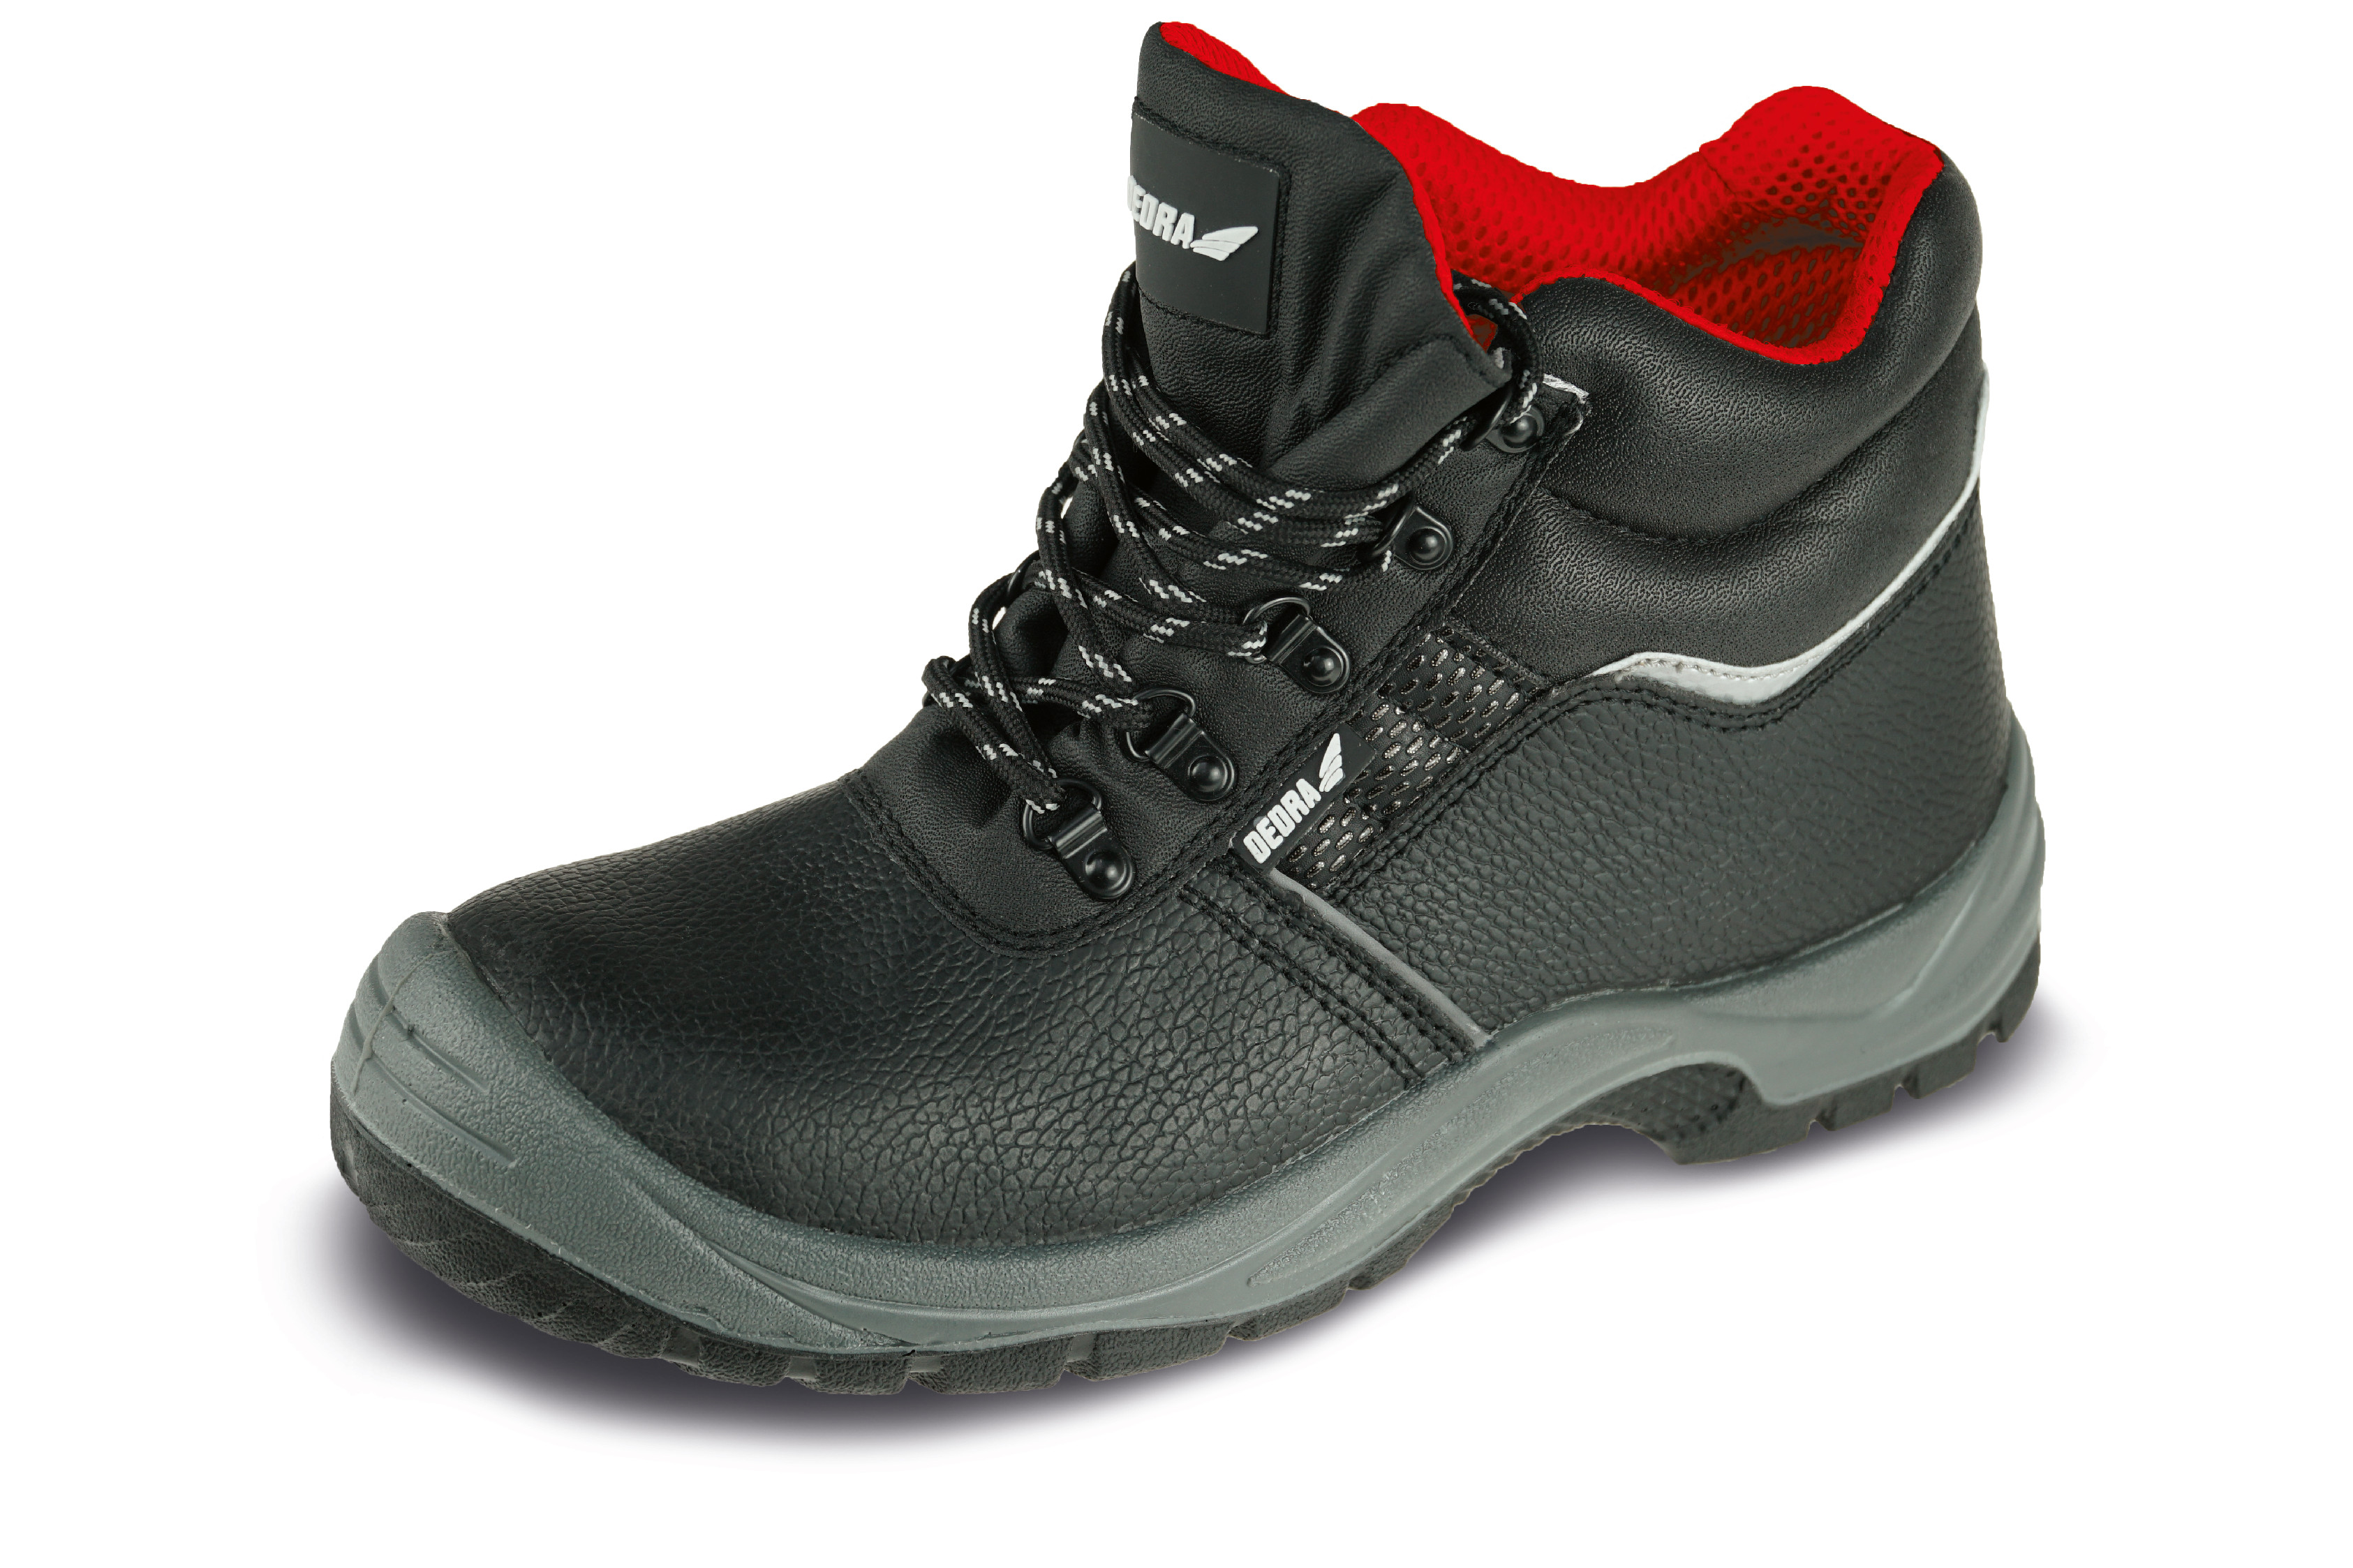 Bezpečnostní boty T1AW, kožené, velikost: 42, kat. S3 SRC DEDRA BH9T1AW-42 + Dárek, servis bez starostí v hodnotě 300Kč